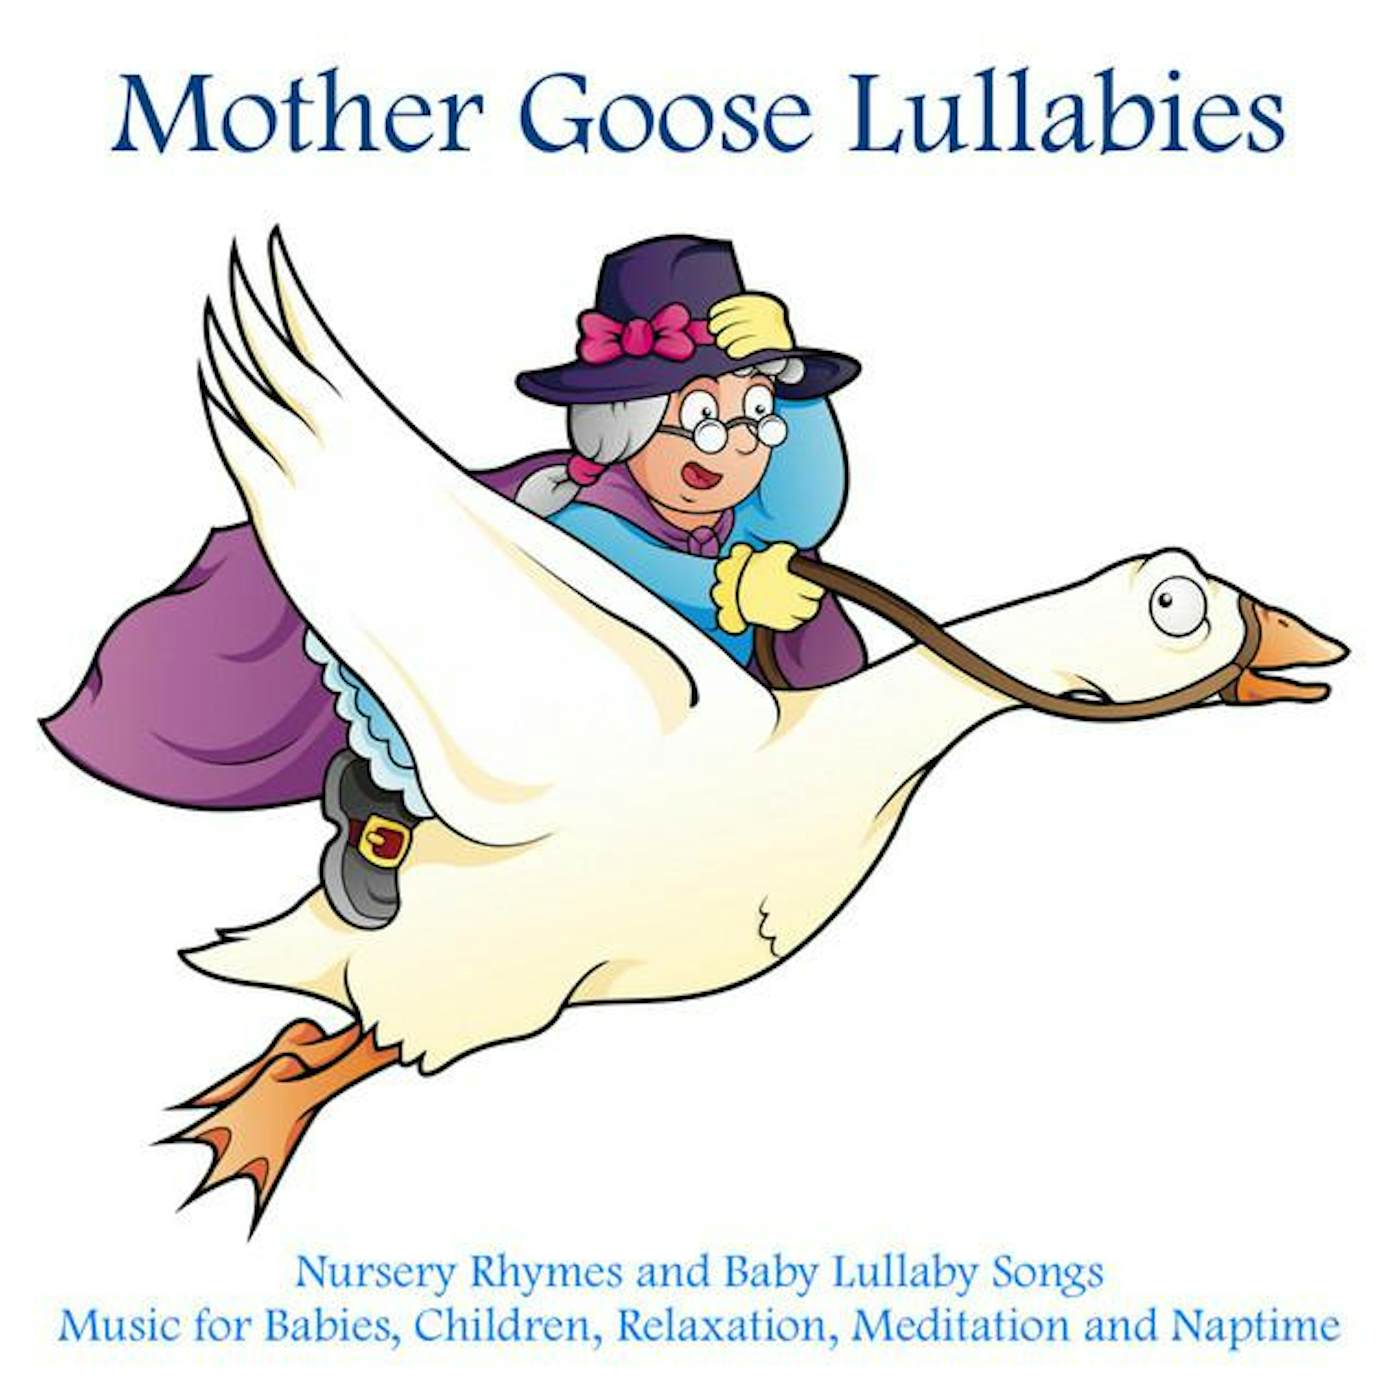 Mother Goose Lullabies